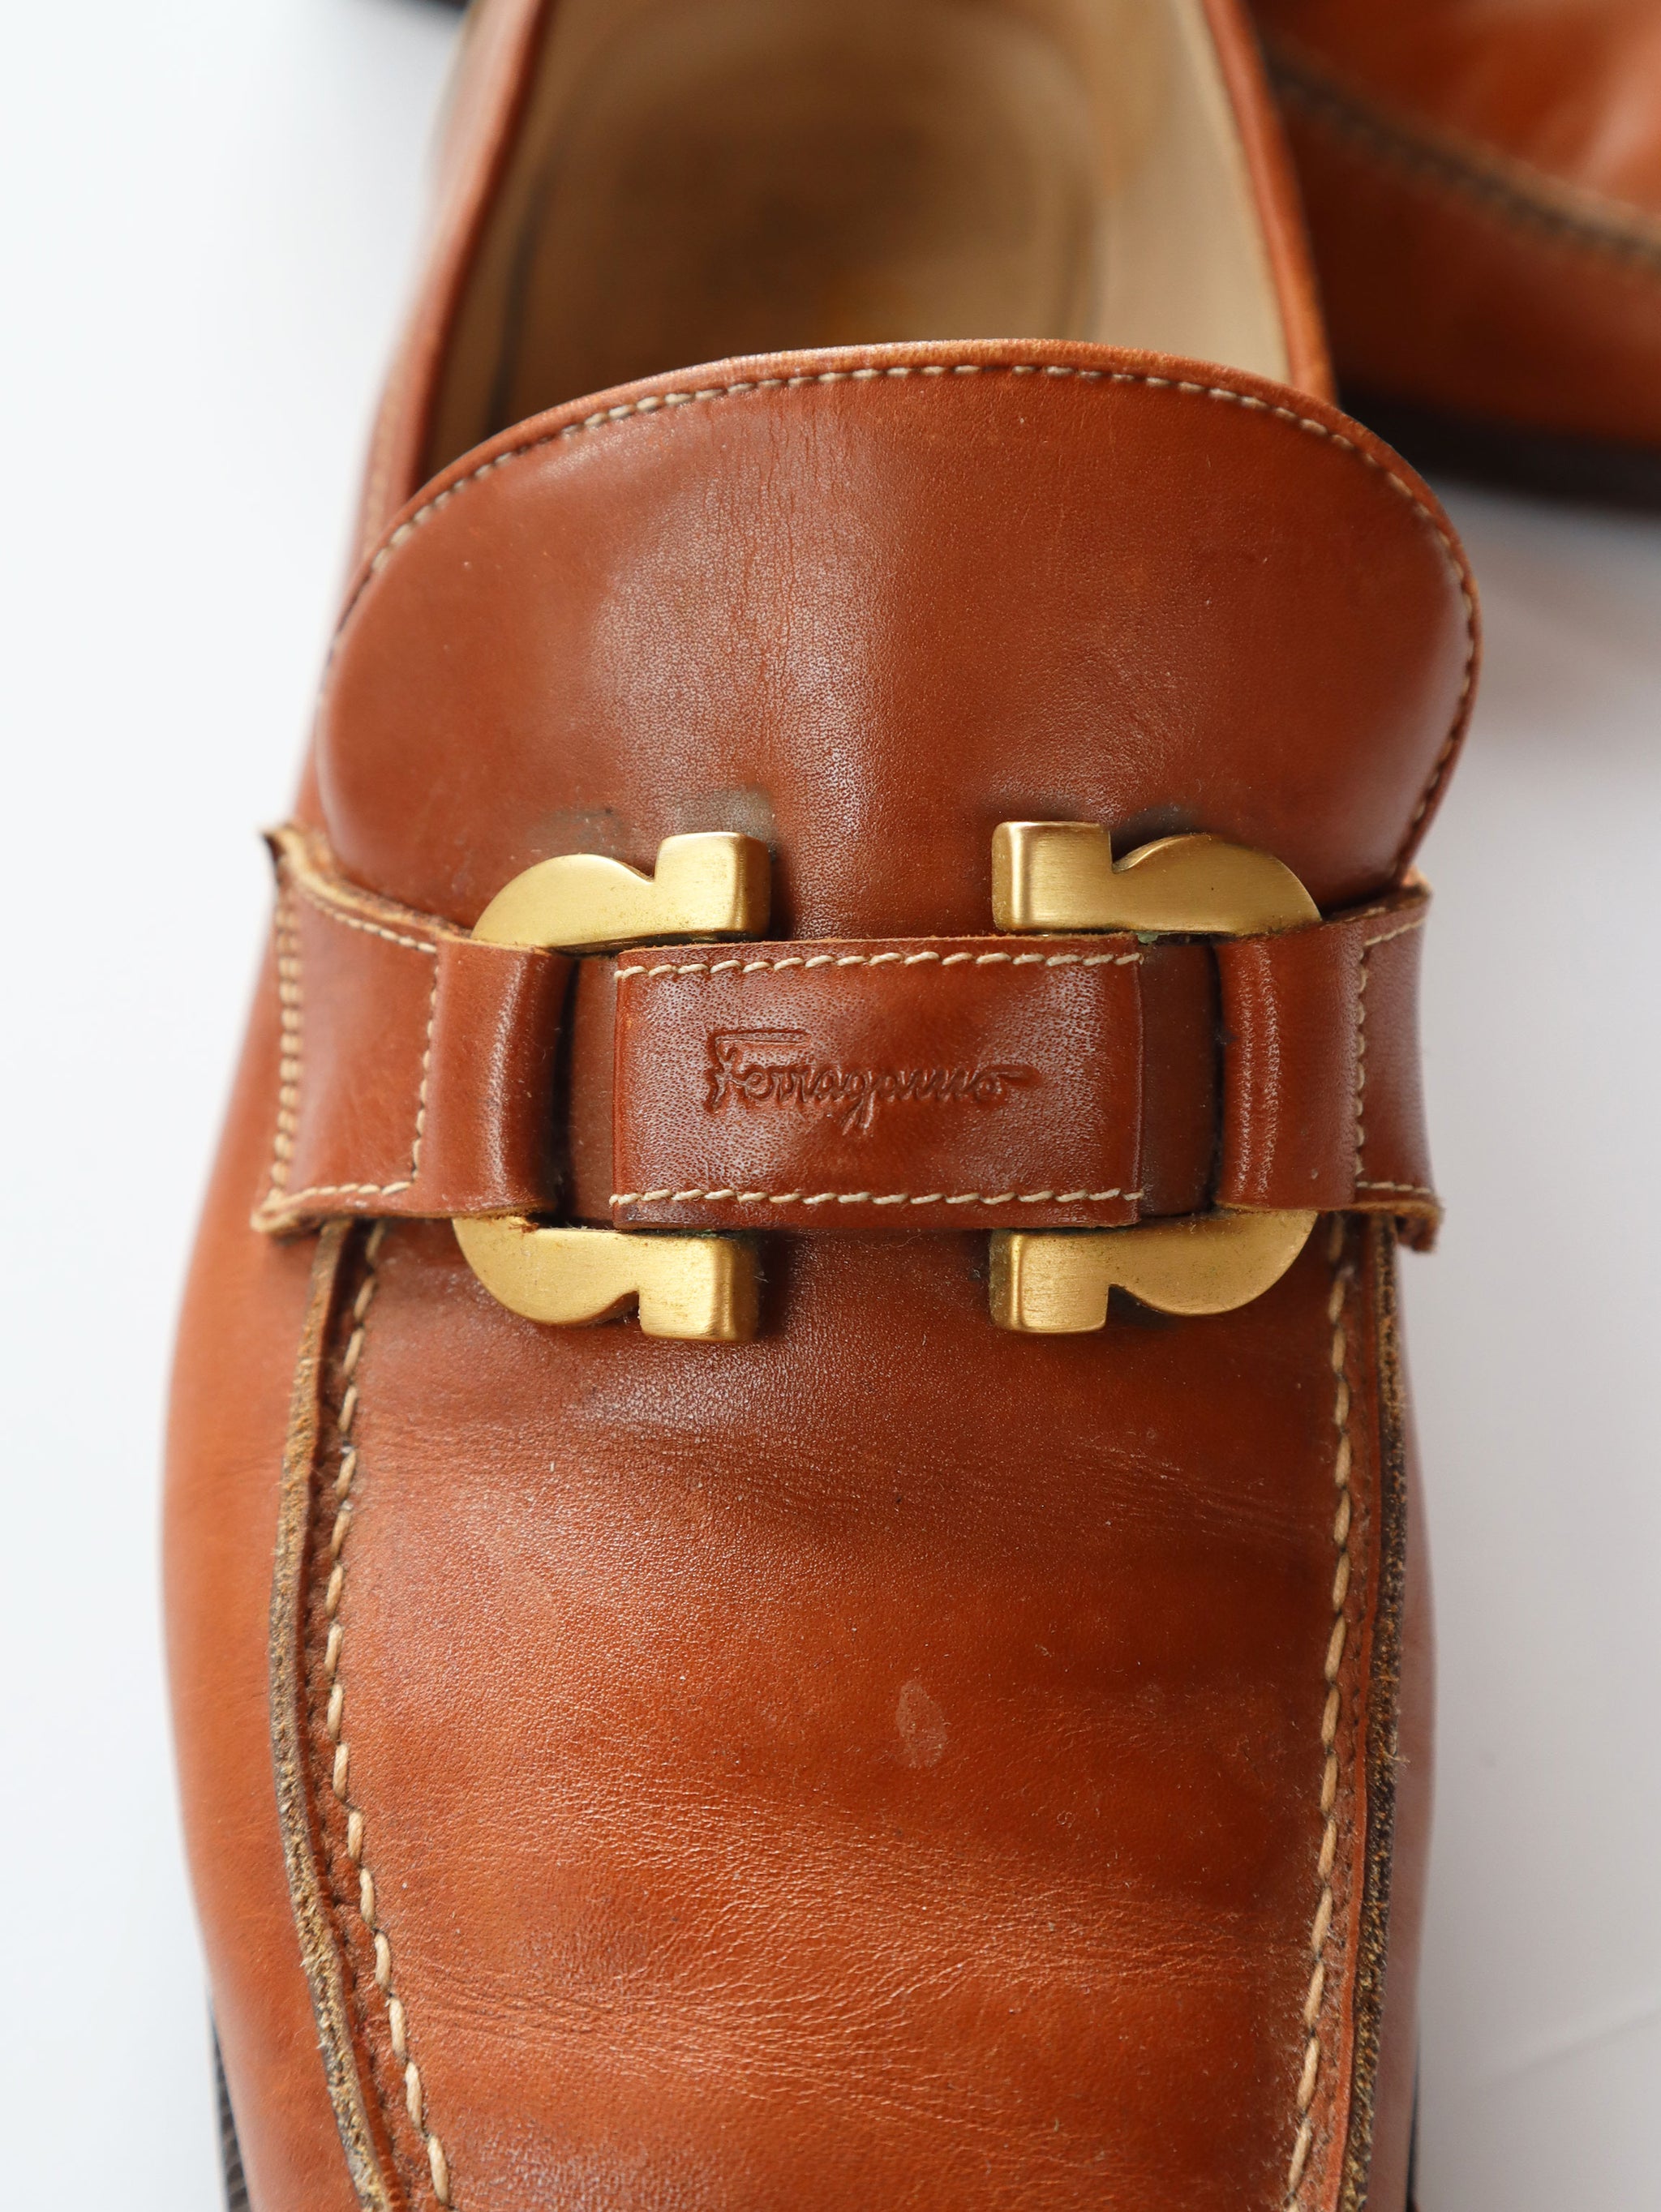 Rare Salvatore Ferragamo Horseshoe Tan Loafers (Size 7.5) - Style a